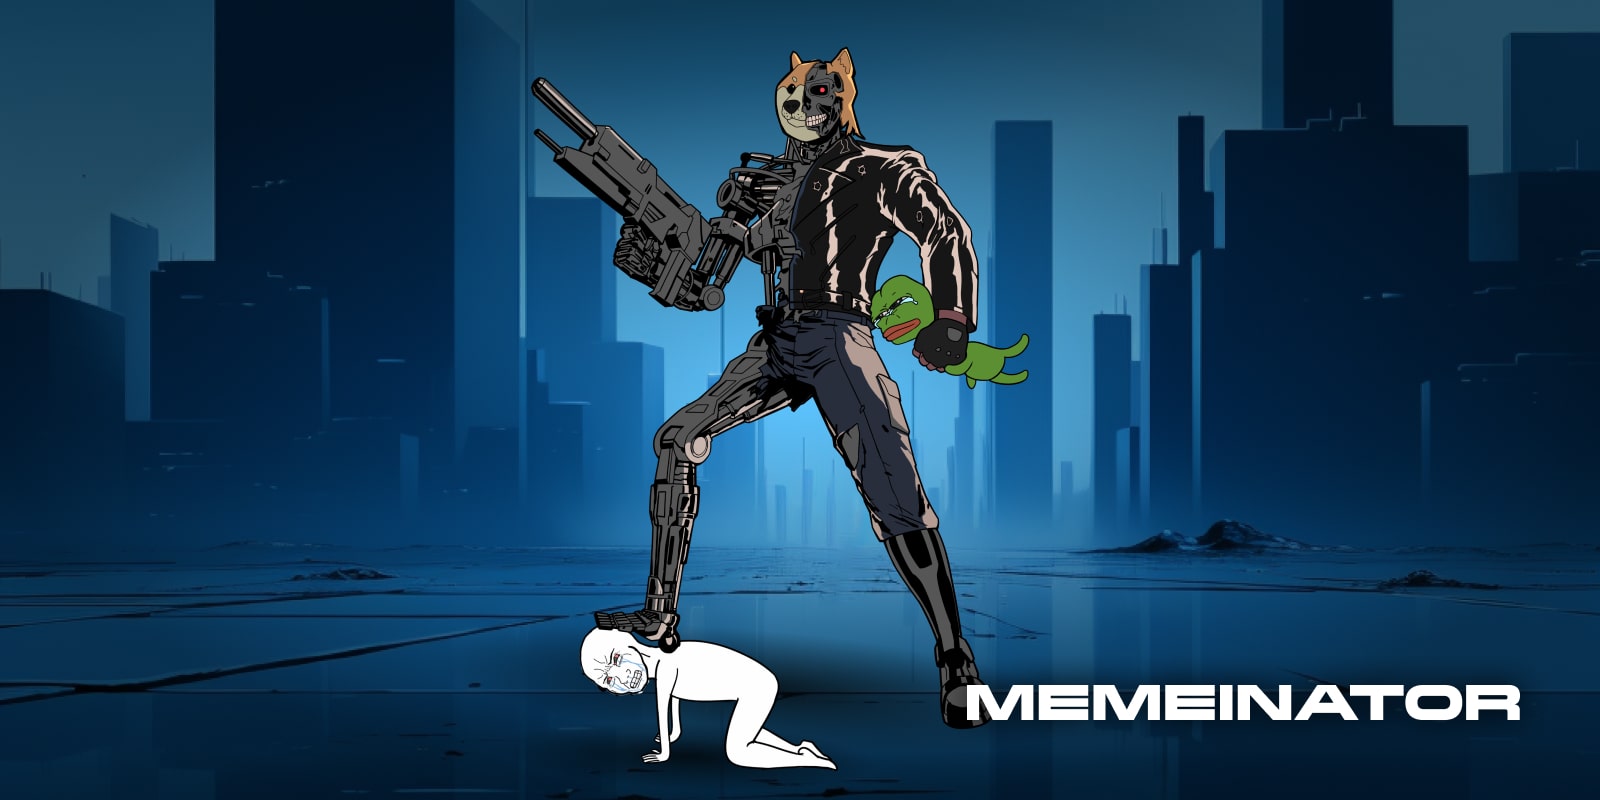 Terminator z twarzą psa depcze postać rysunkową i dusi żabę Pepe